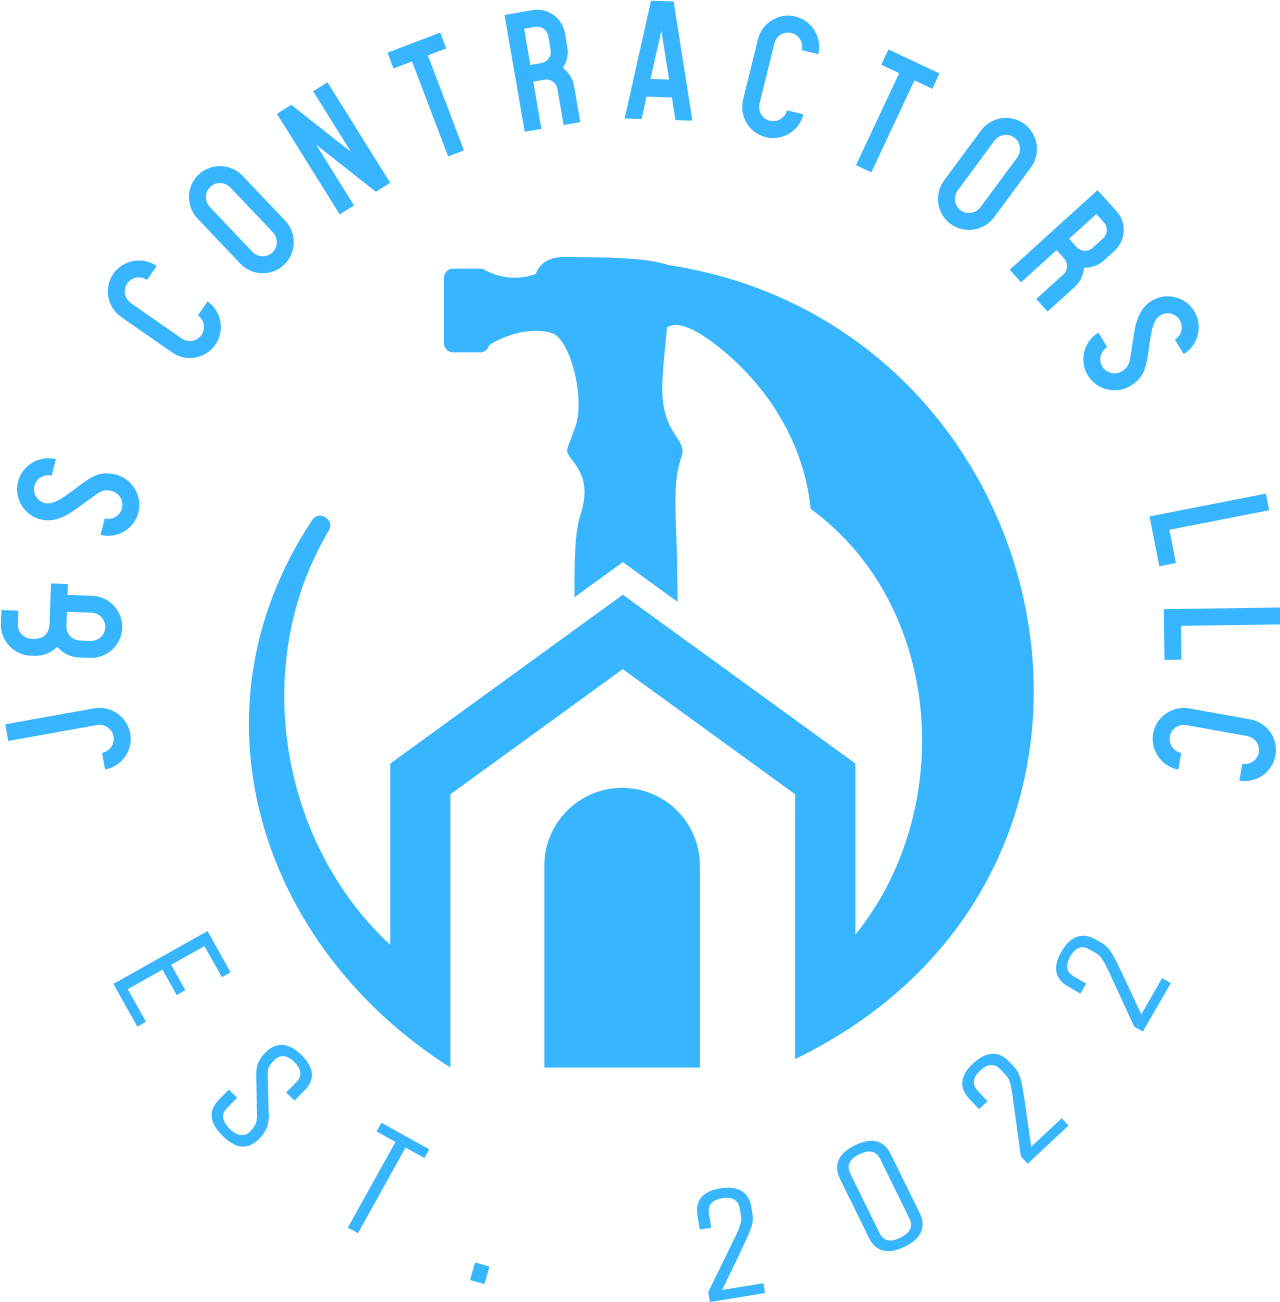 J&S contractors llc's logo